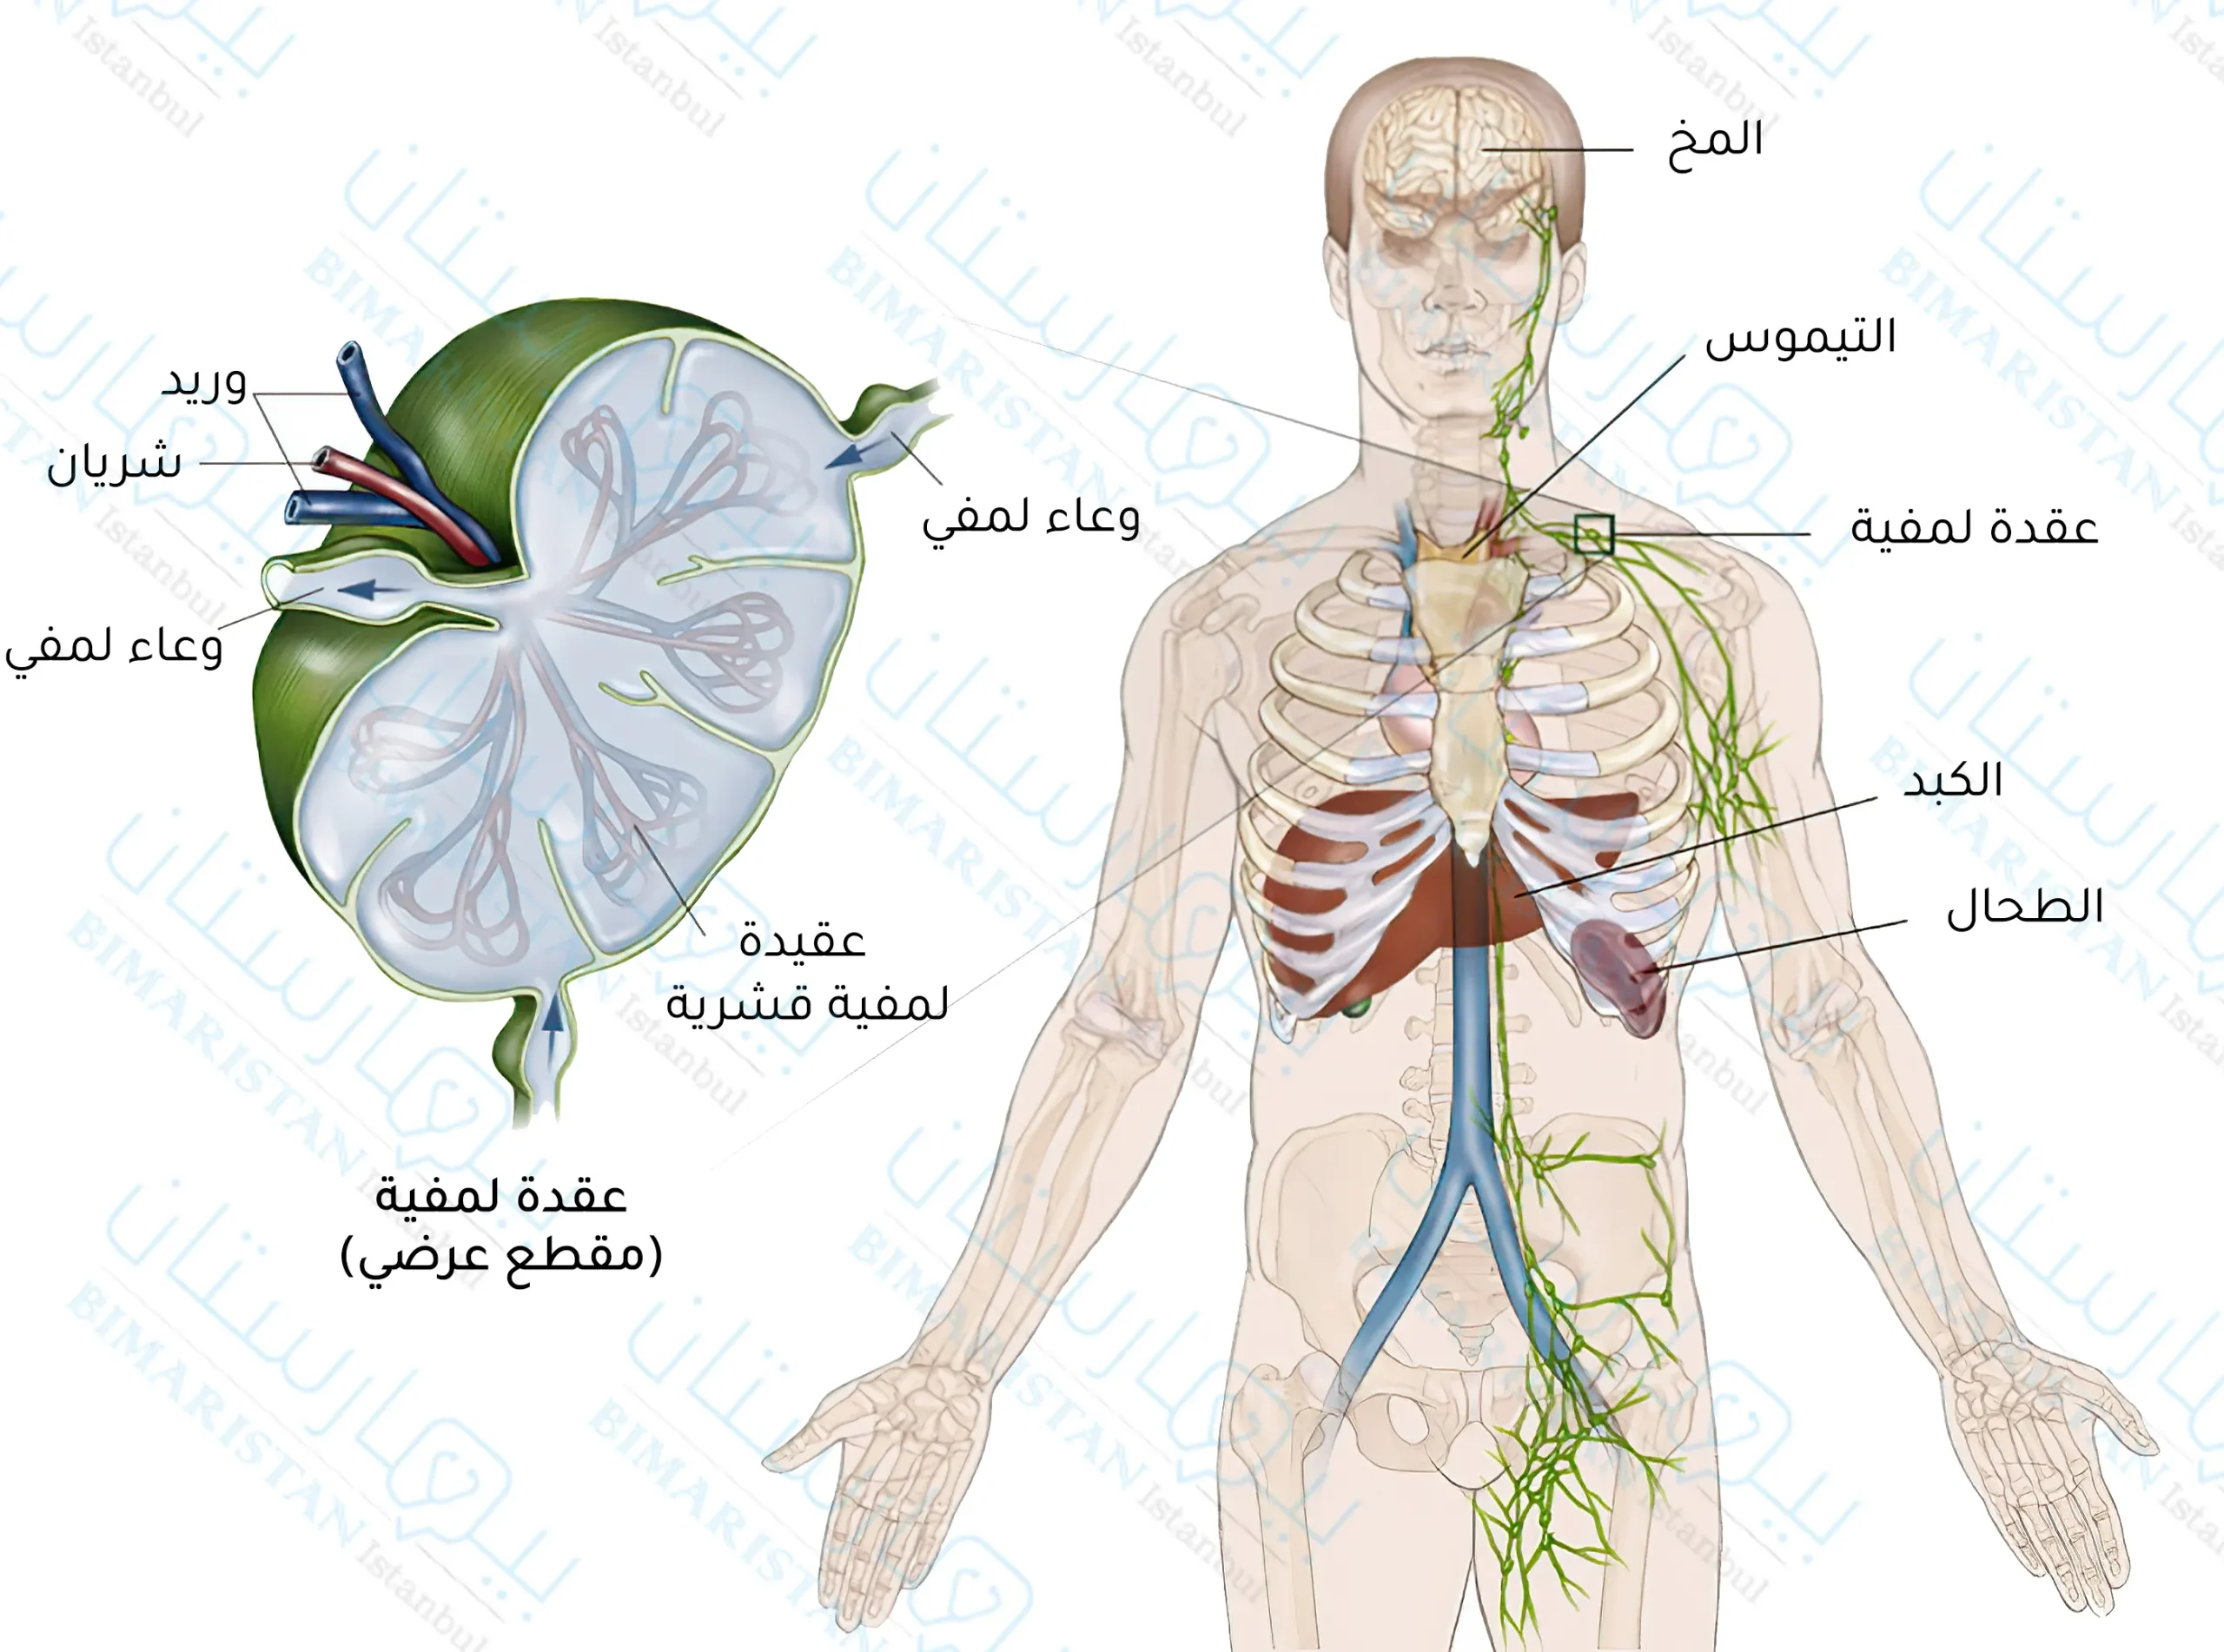 İnsan vücudundaki lenfatik sistemin resmi ve lenf düğümünün bir bölümü